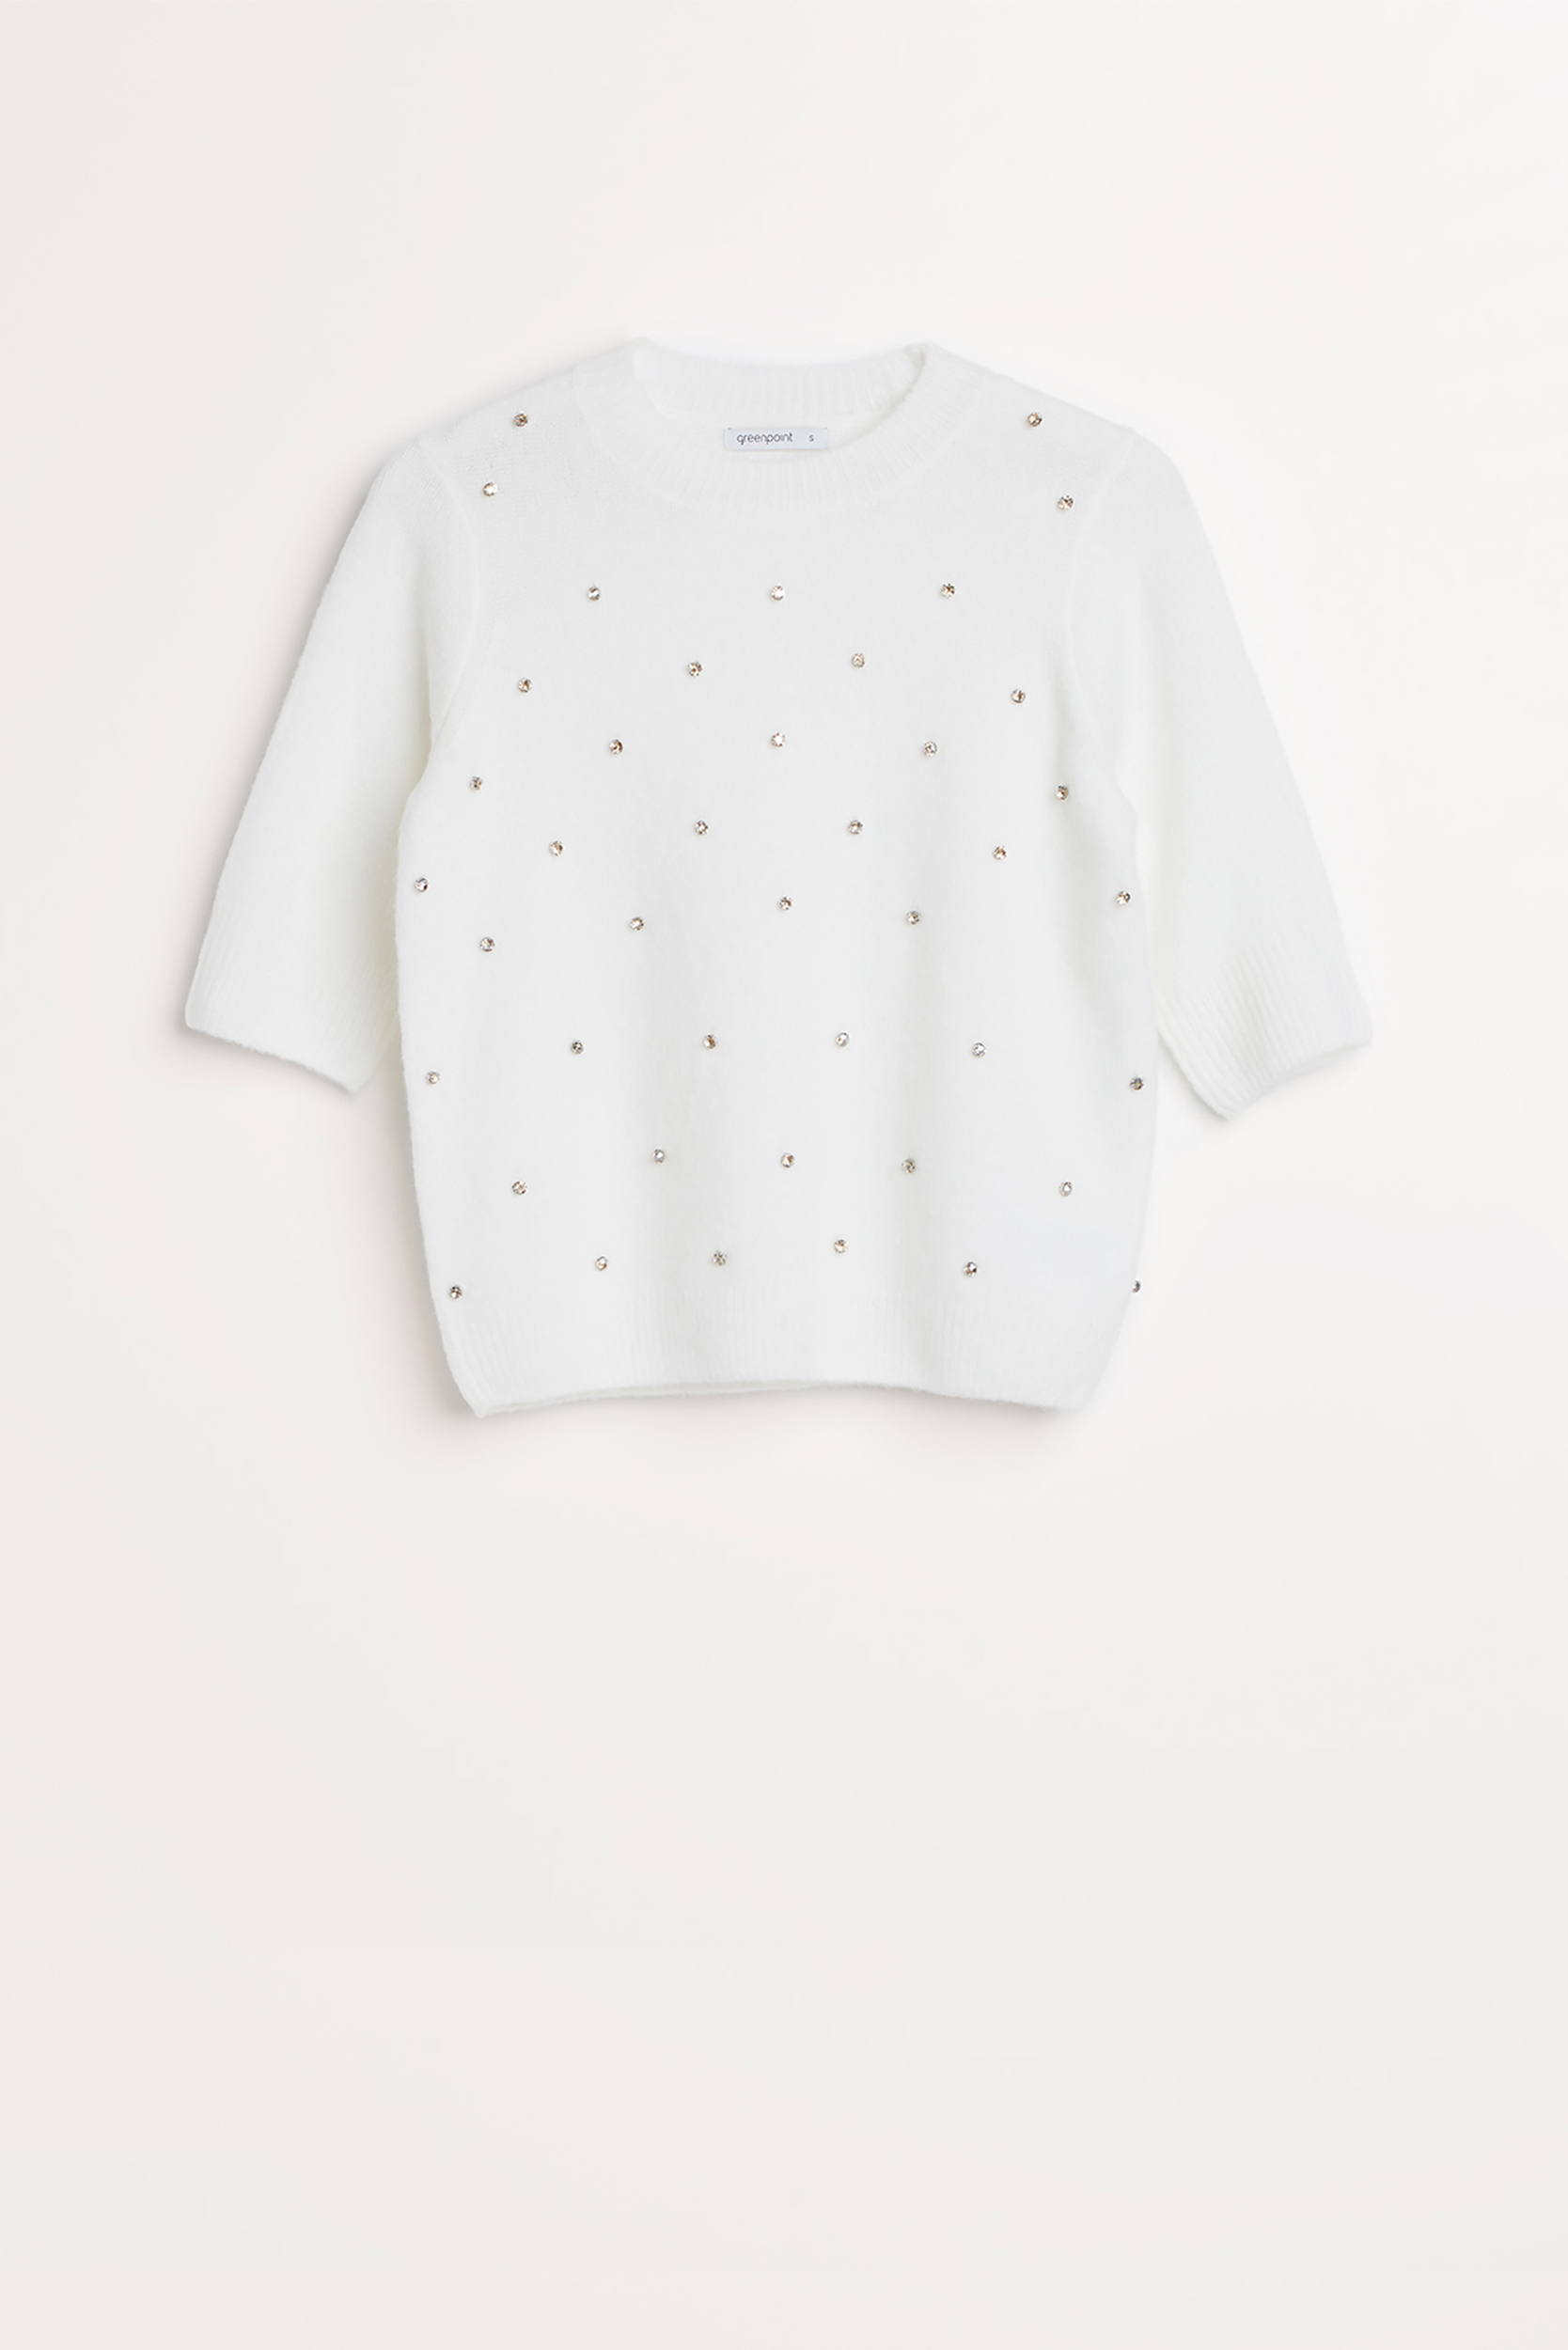 Kremowy sweter z błyszczącą aplikacją z cyrkonii